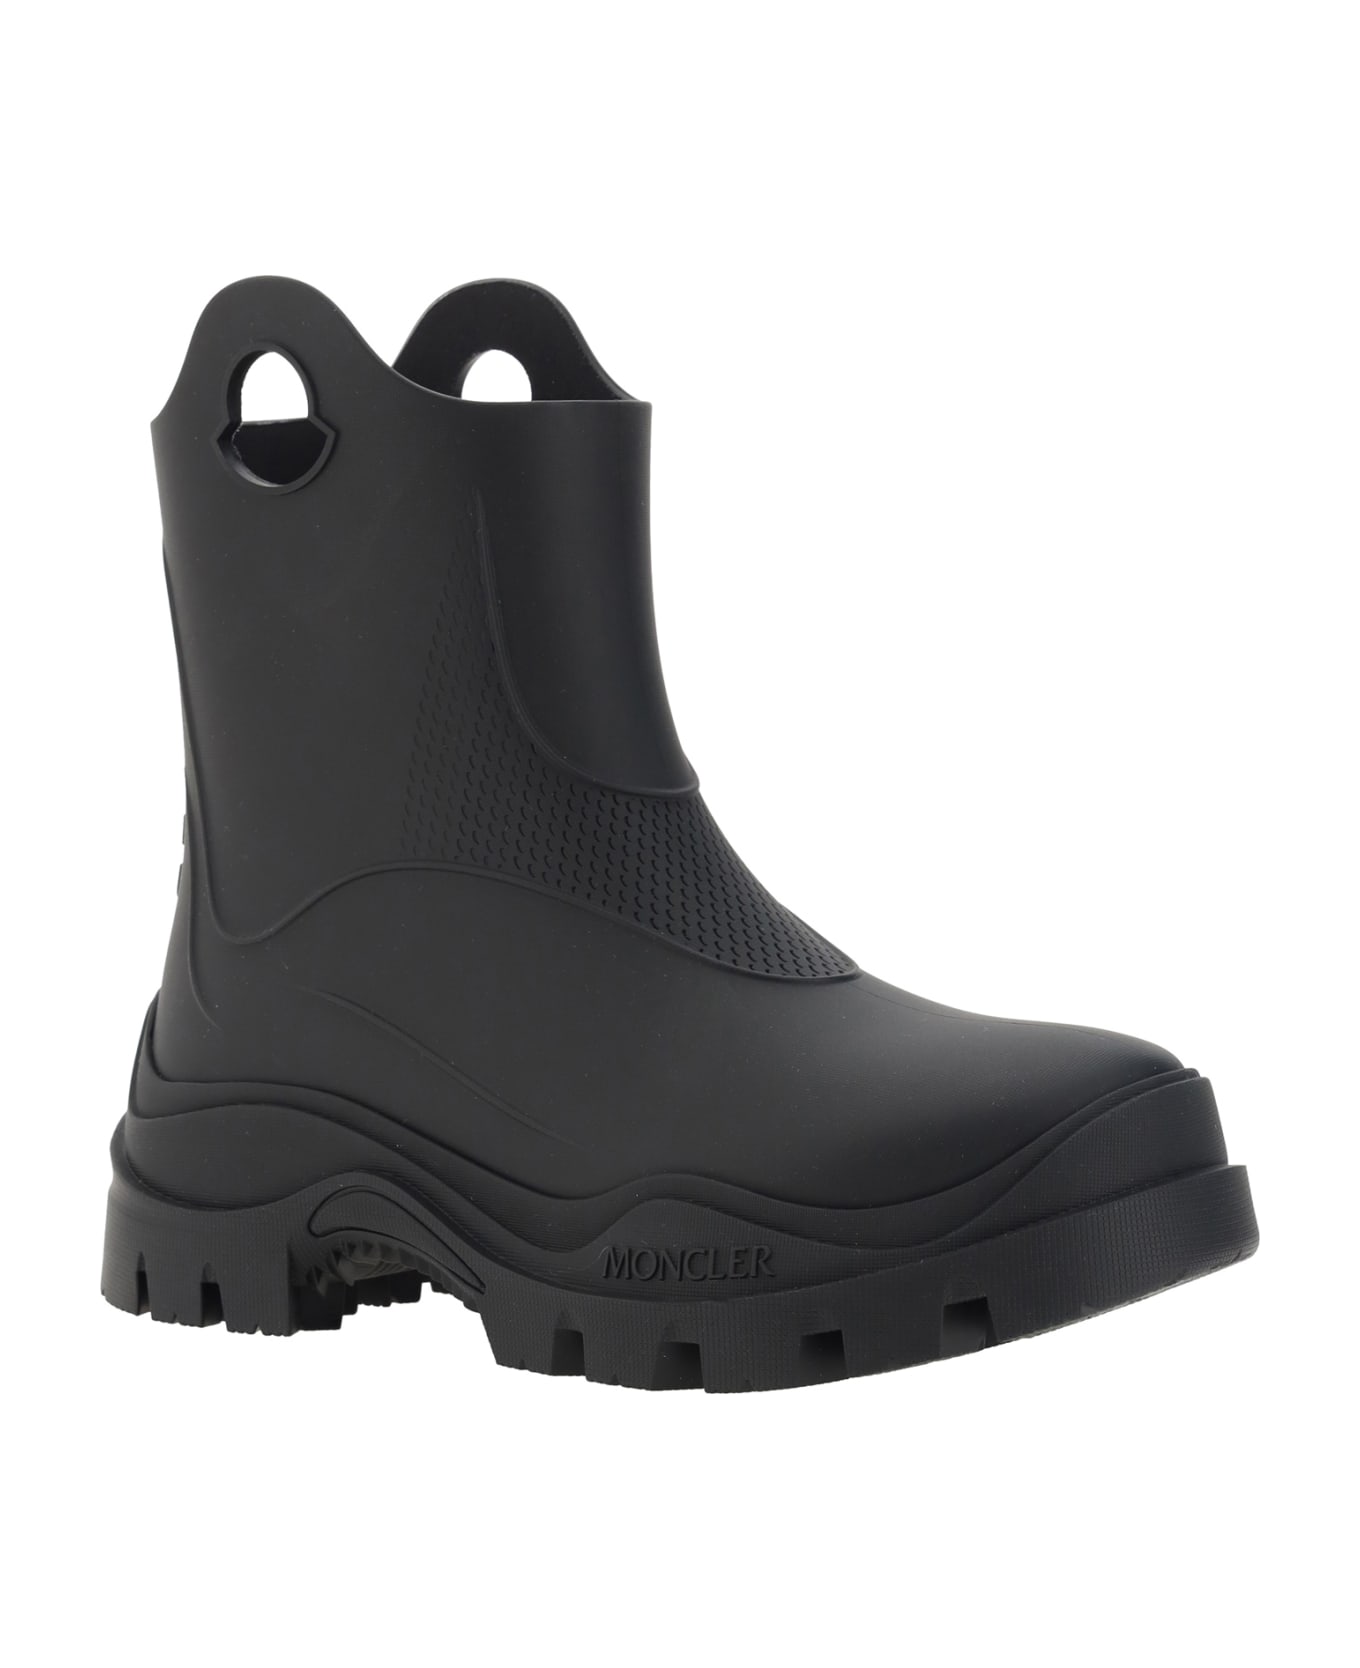 Moncler Misty Rain Ankle Boots - Black